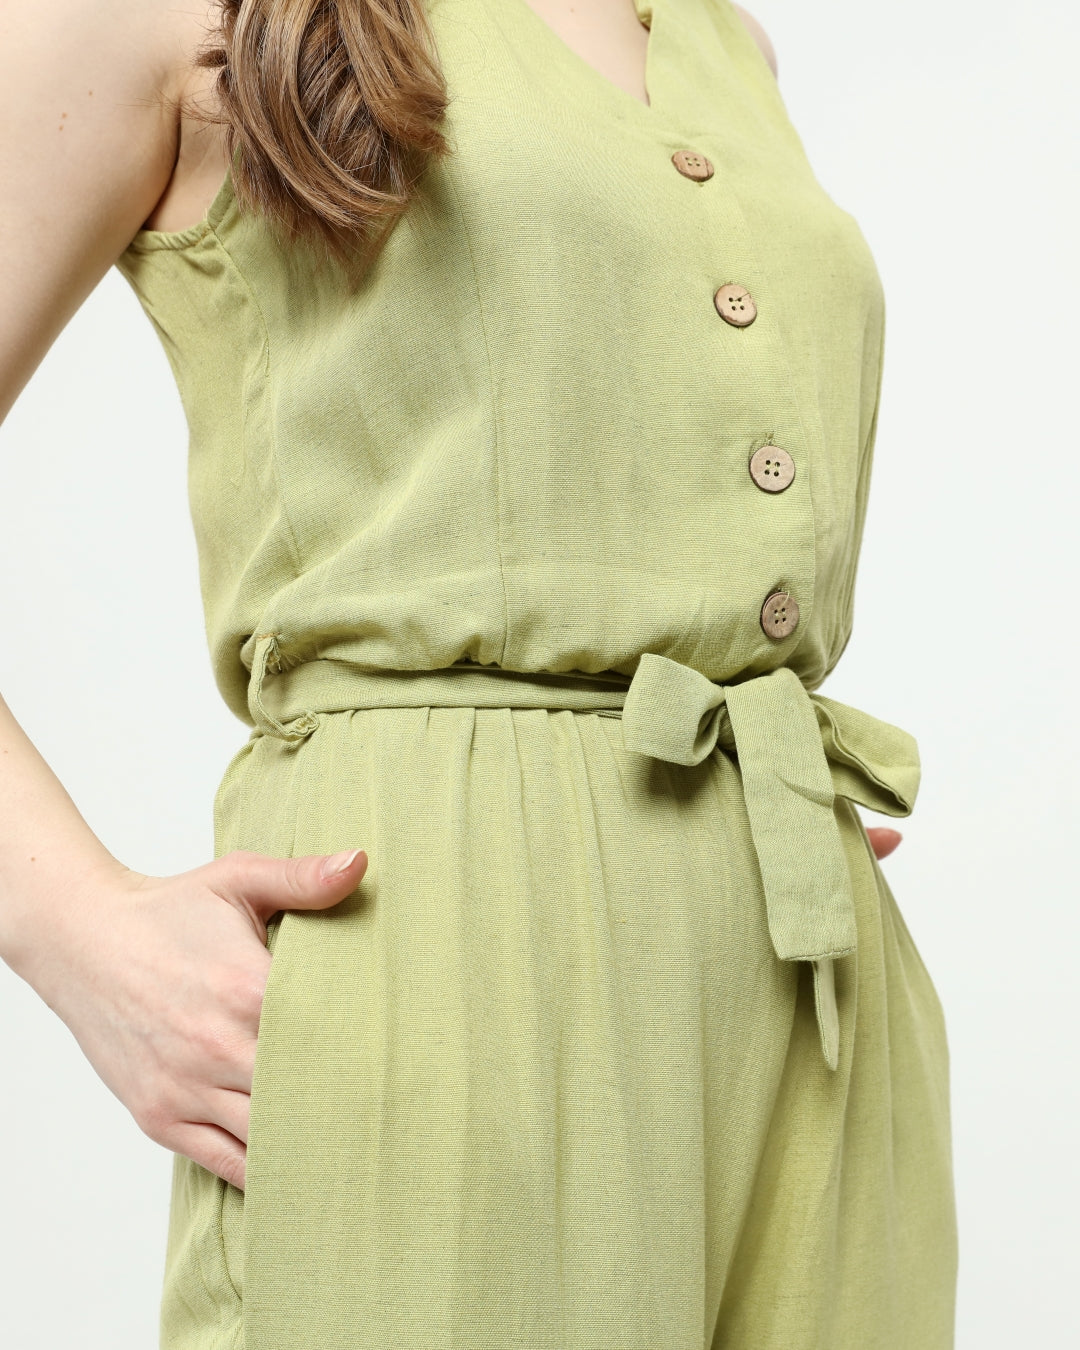 Lime Linen Jumpsuit